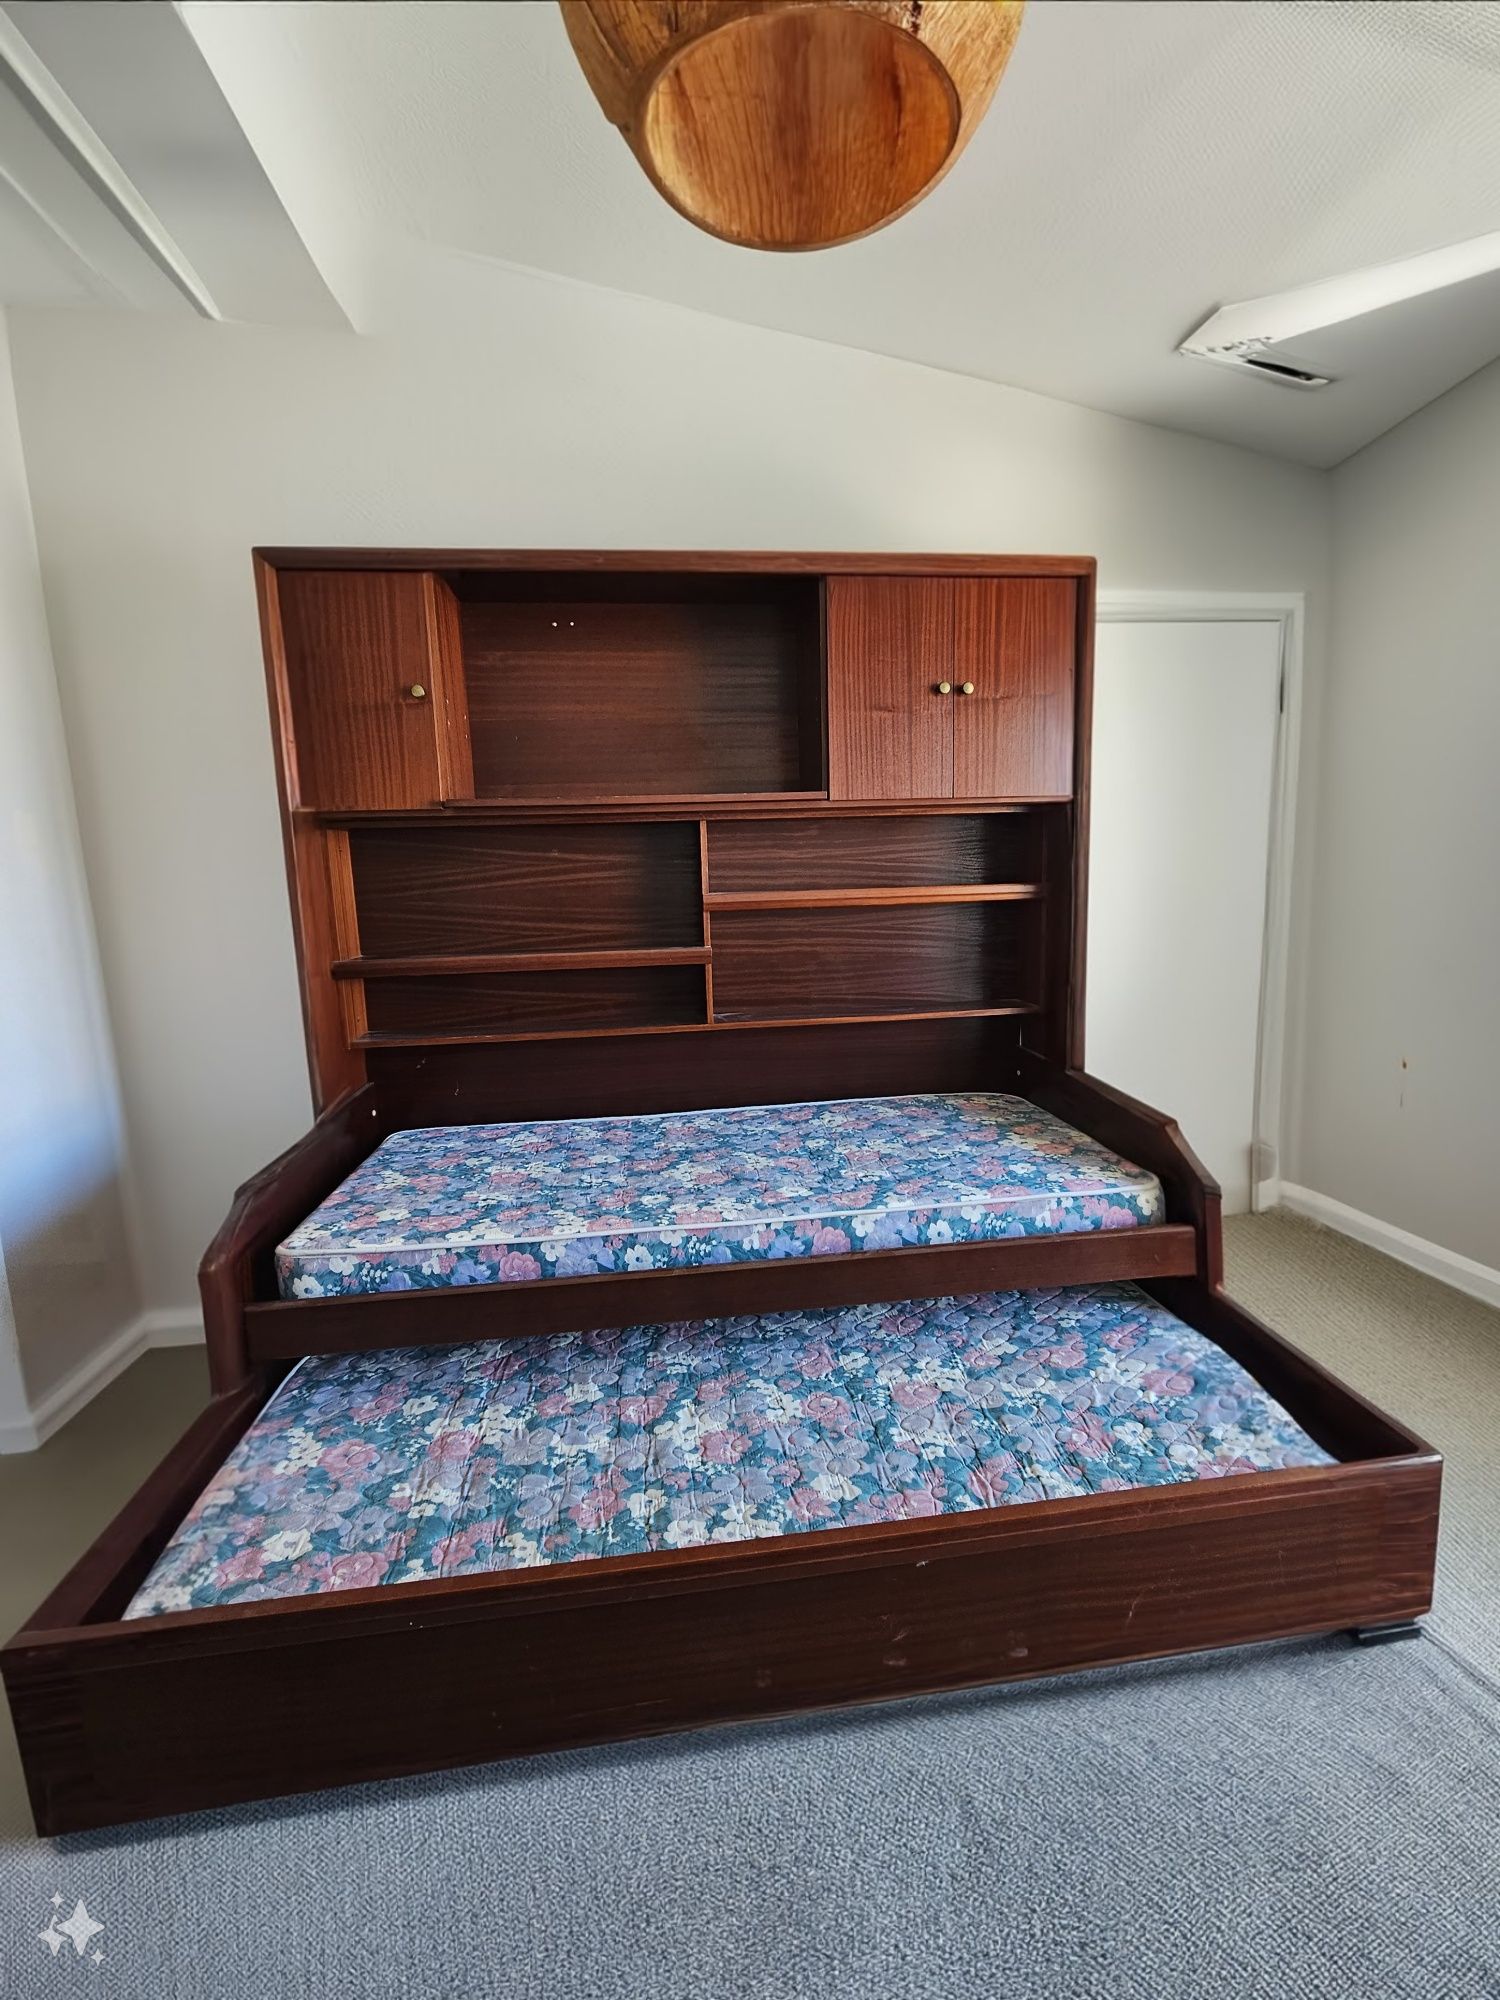 Móvel sala com duas camas individuais "venda urgente libertar espaço"